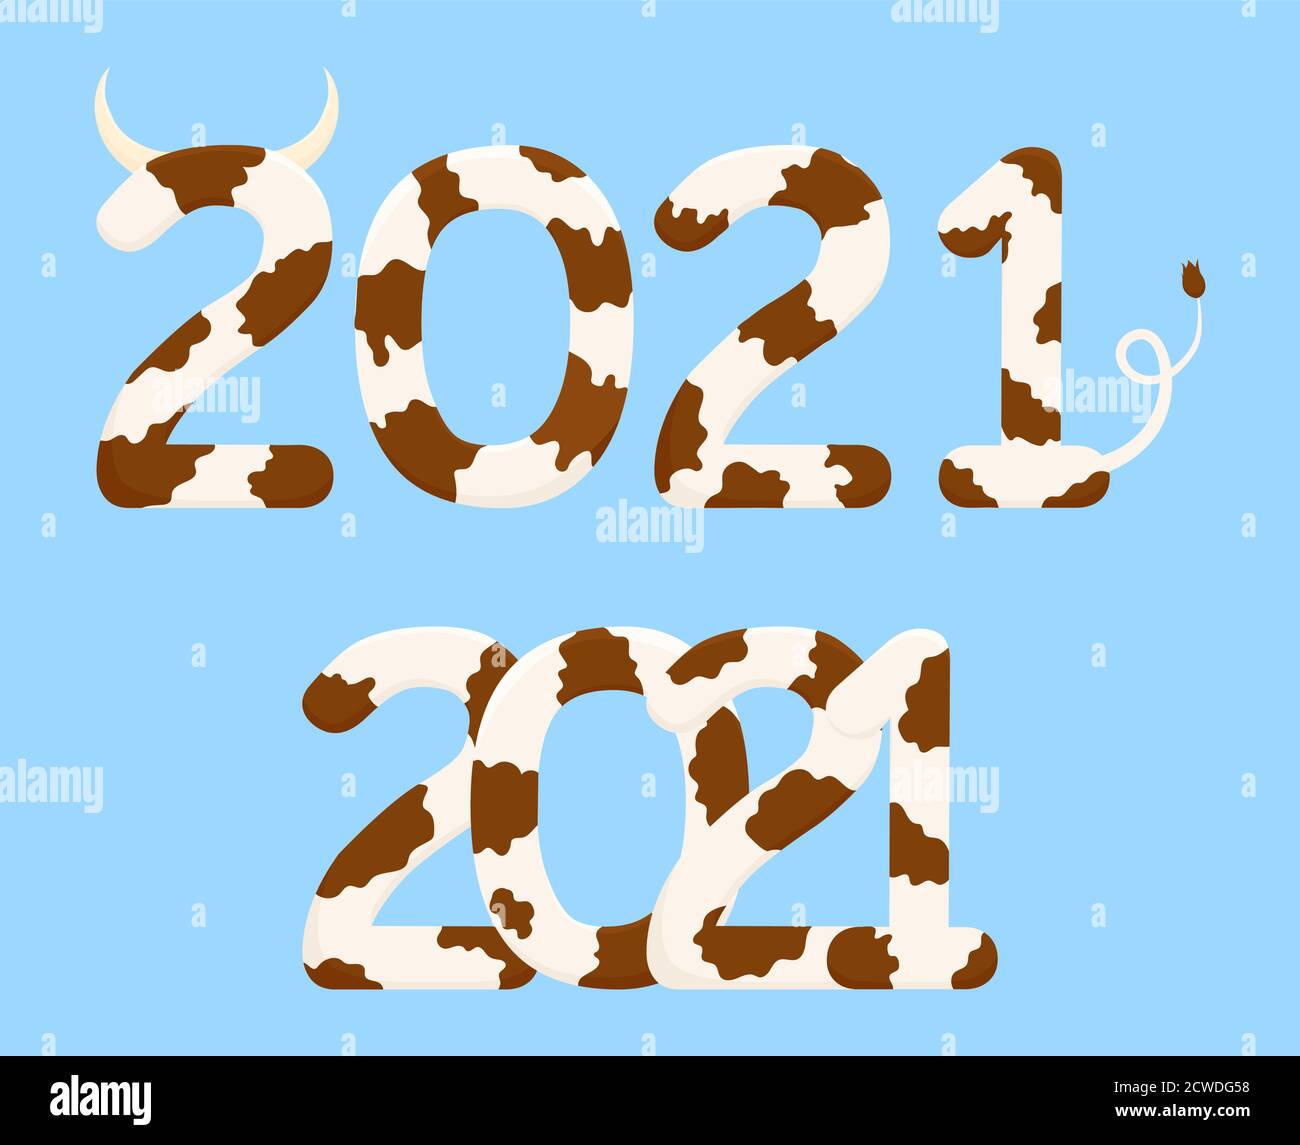 Nouveaux chiffres chinois de l'année 2021, tachetés dans le style du boeuf , symboles de vache marron isolés sur fond bleu Illustration de Vecteur